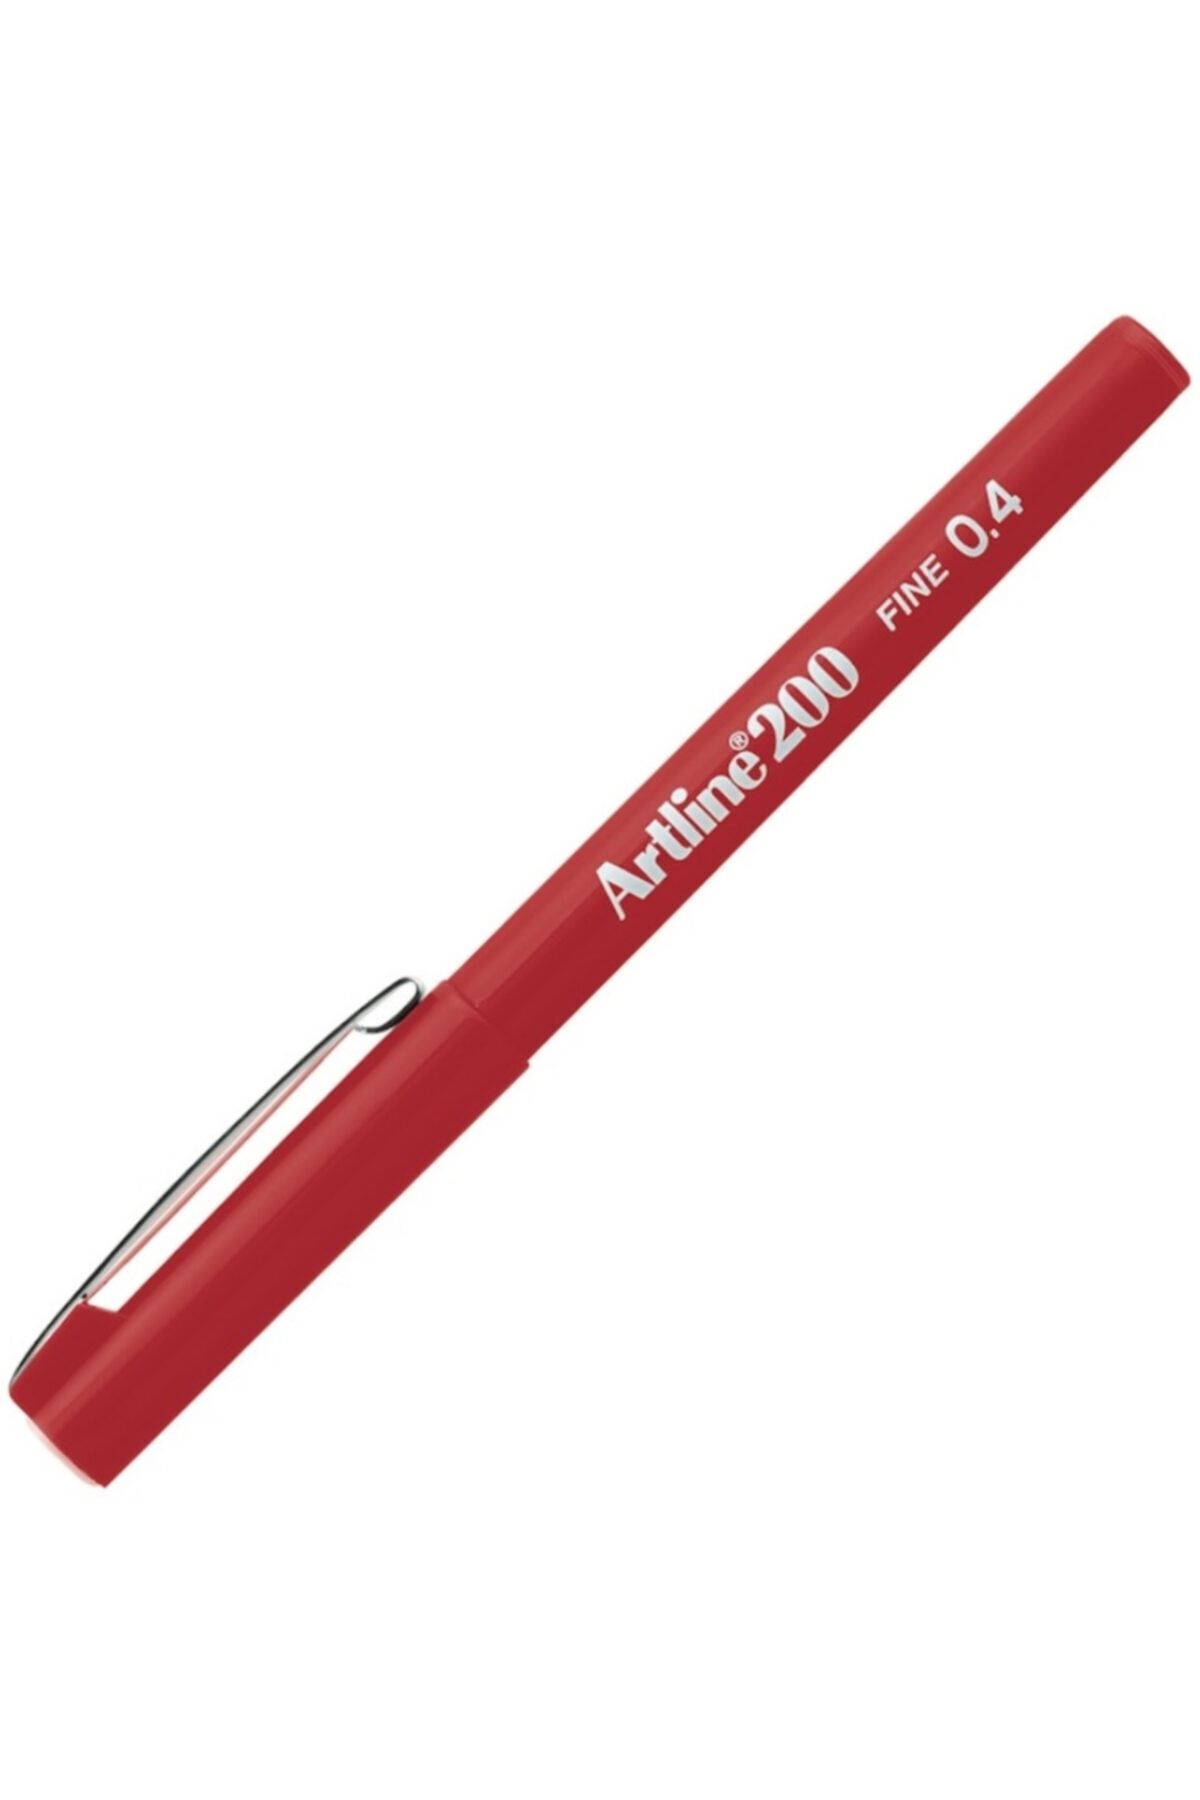 artline 200 Fine 0.4 Fineliner Keçeli Kalem Kırmızı